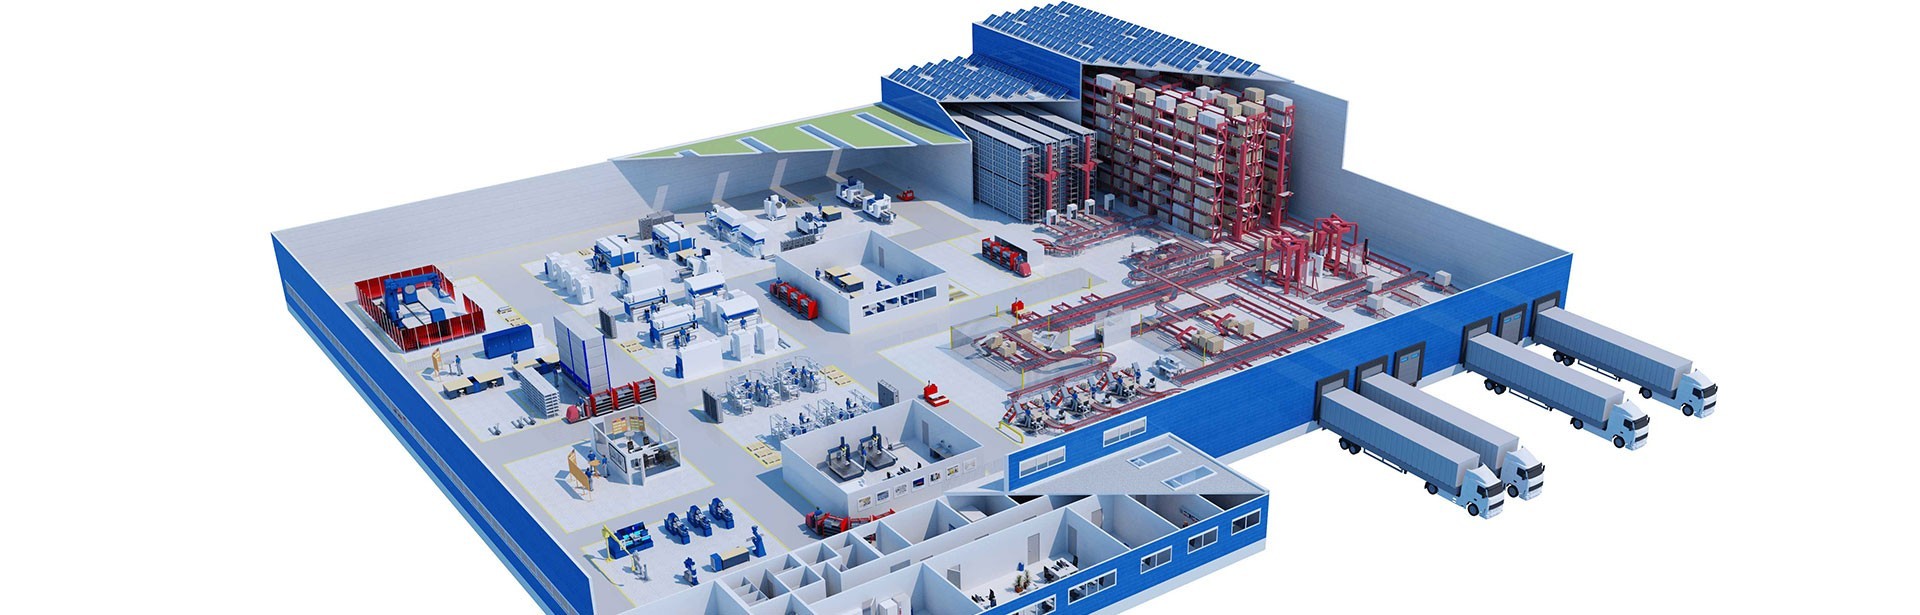 Modellierung einer Fabrik